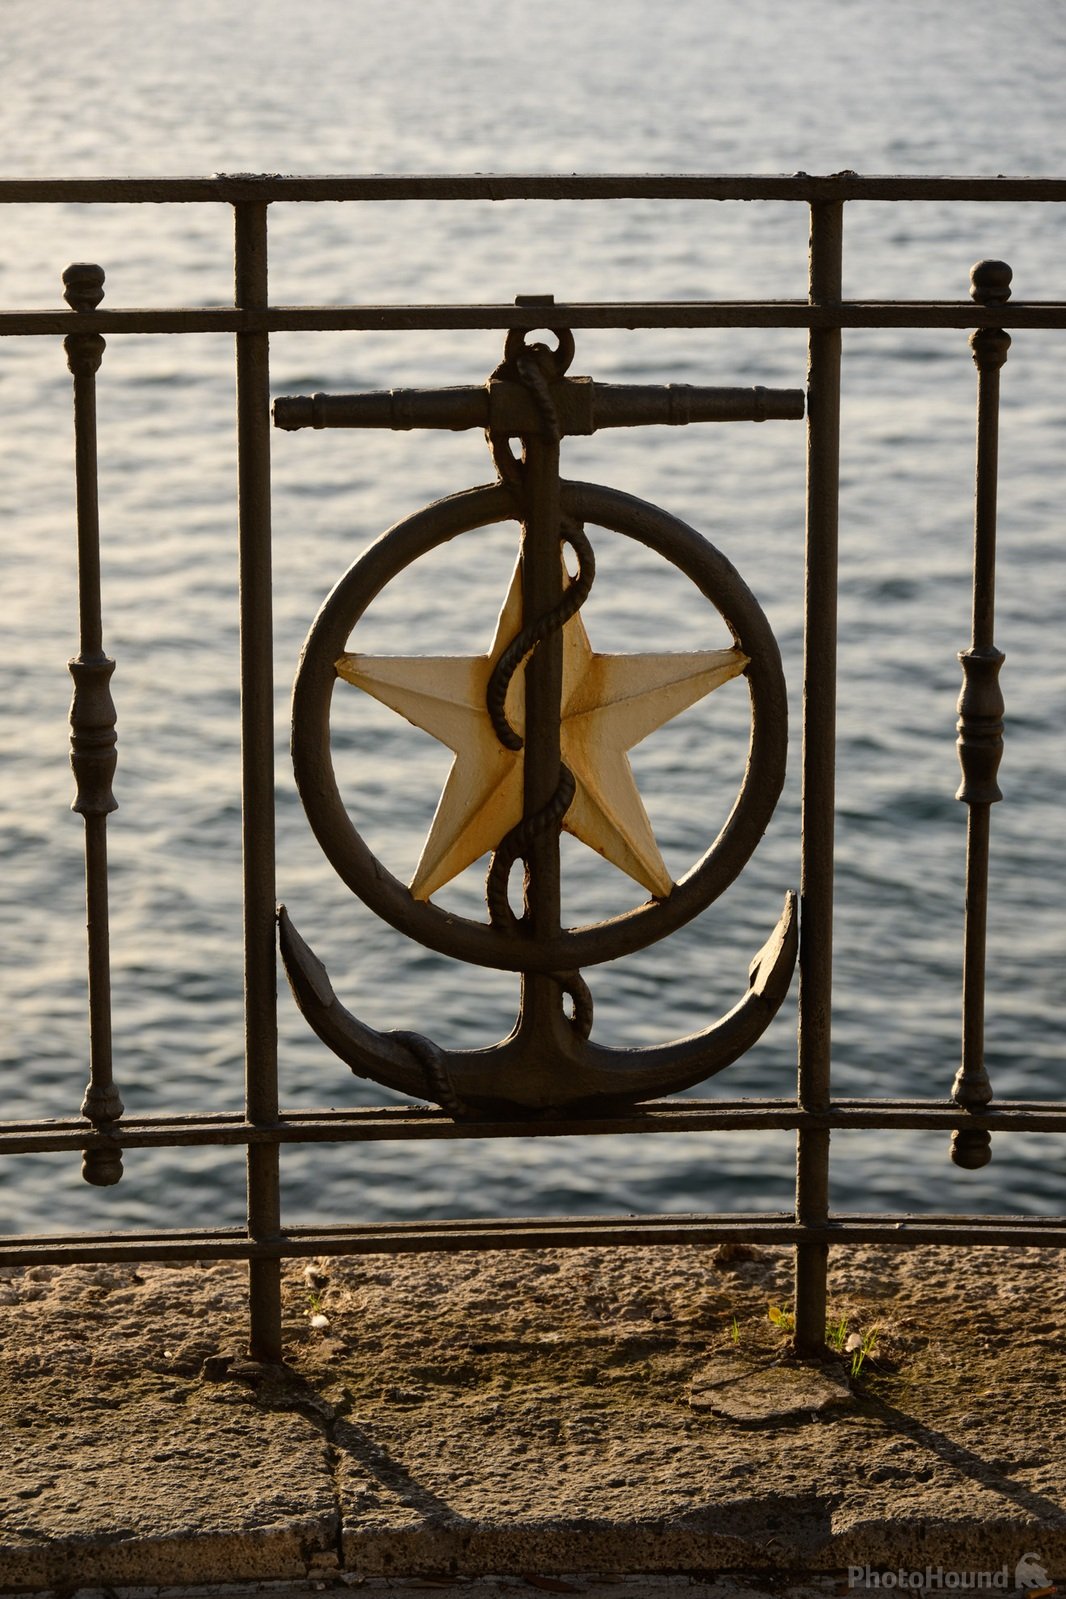 Image of Monumento al Marinaio (Sailor Monument) by Luka Esenko